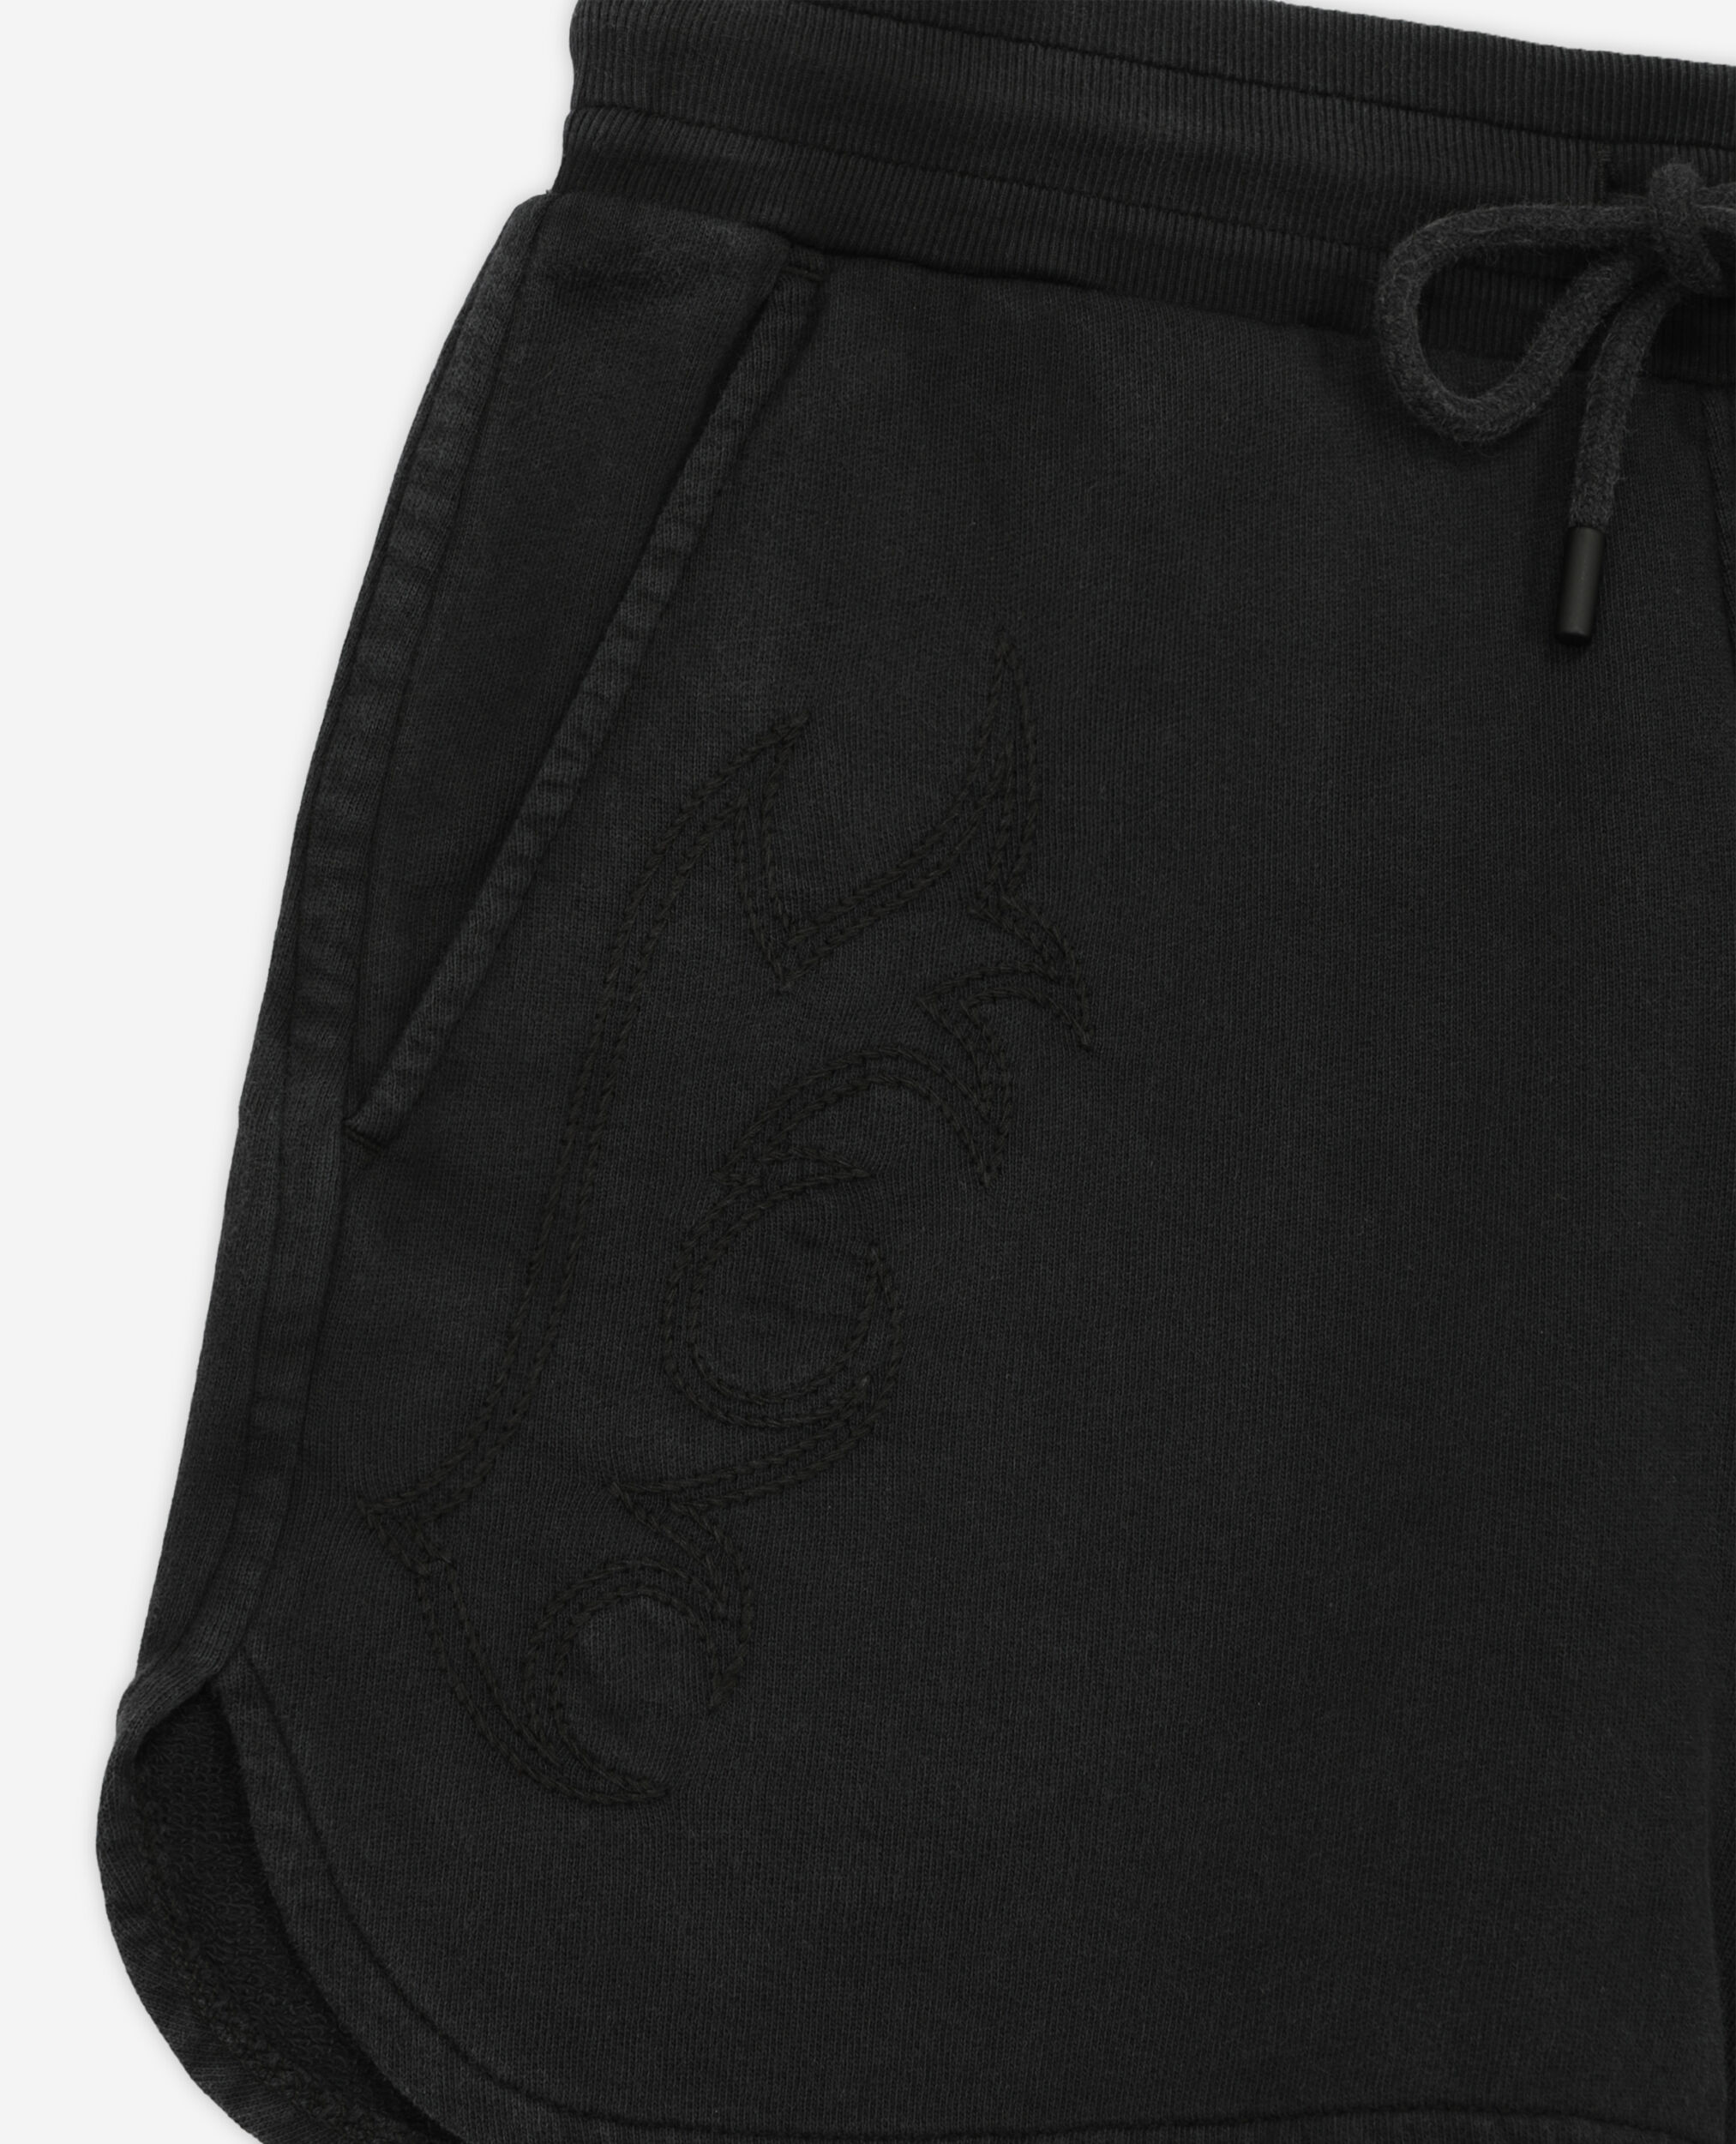 Schwarze Shorts aus Molton mit Stickereien, BLACK WASHED, hi-res image number null